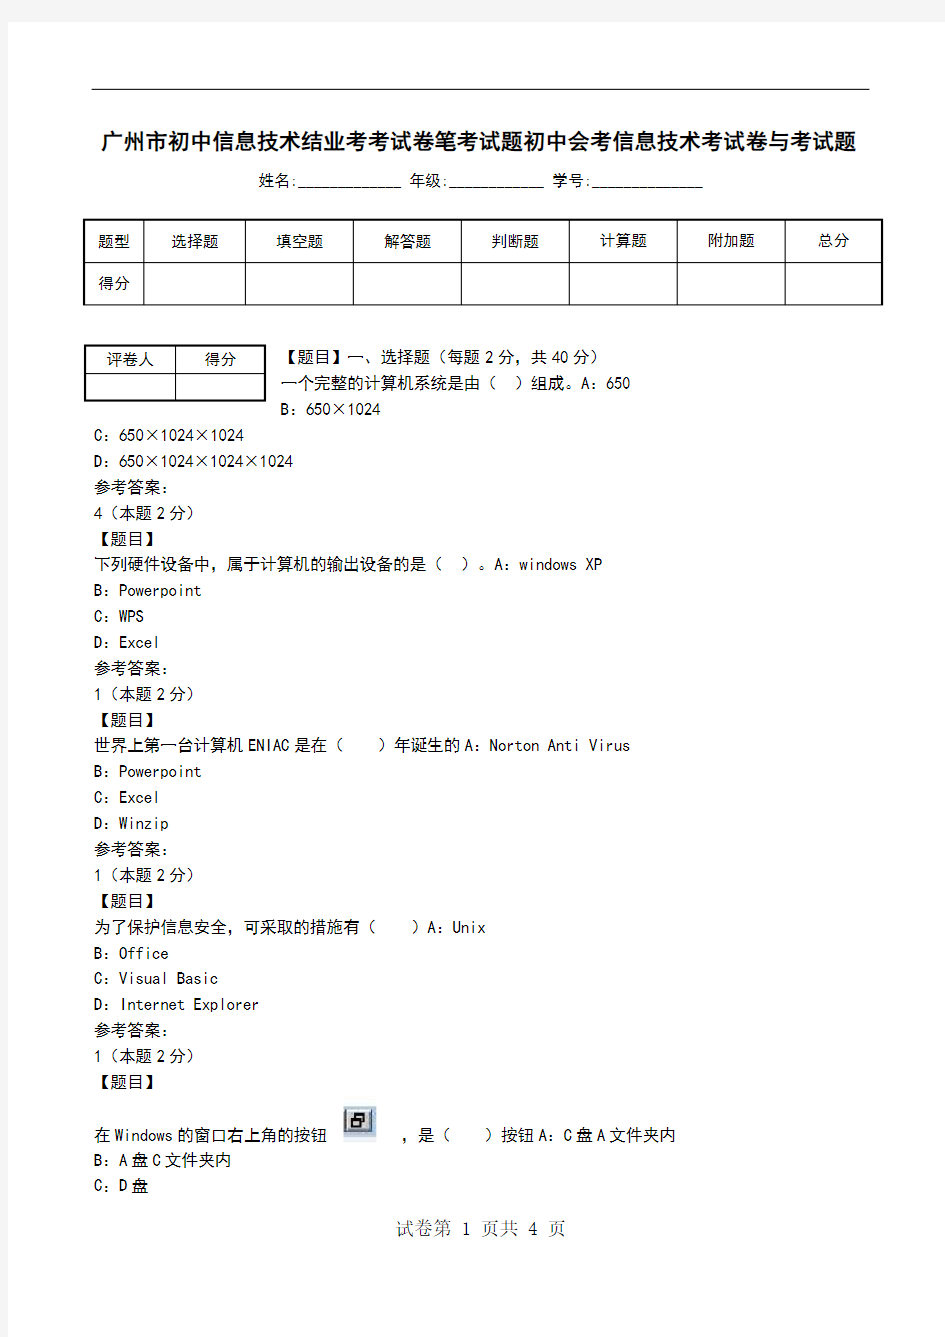 广州市初中信息技术结业考考试卷笔考试题初中会考信息技术考试卷与考试题_1